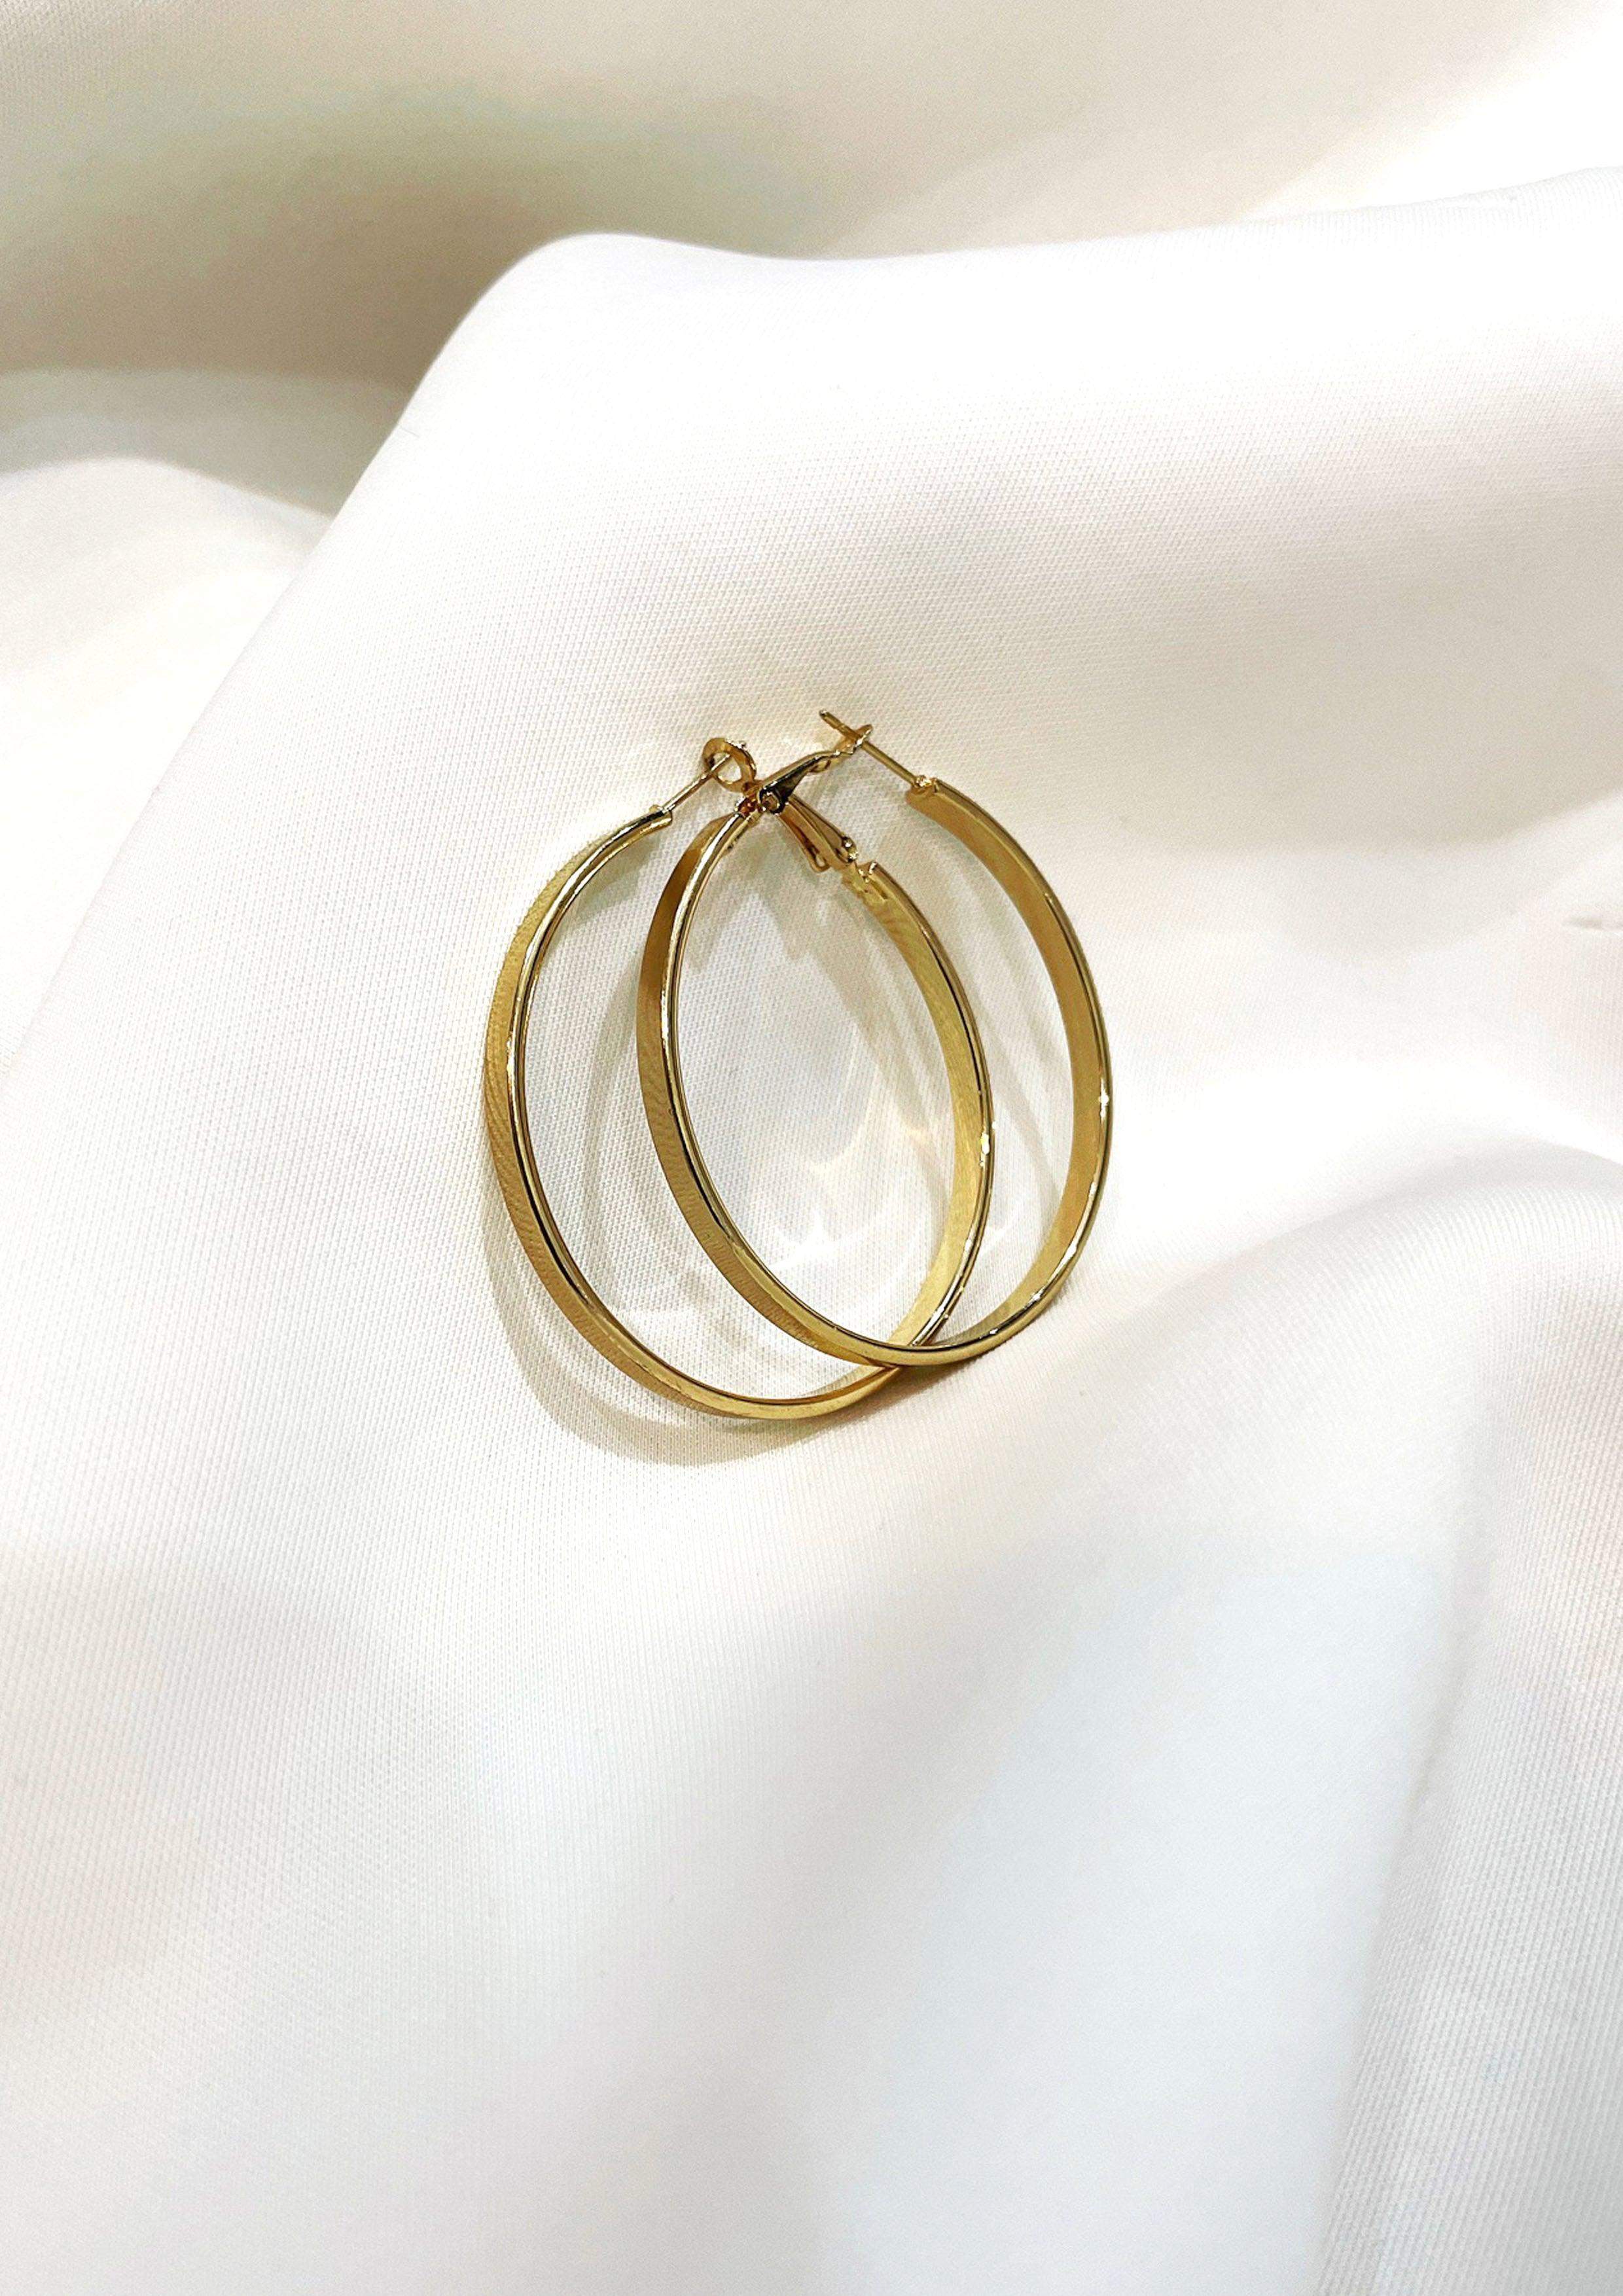 Gold Hoop Earrings - Medium-Slayink-accessories,earrings,Gold Earring,Gold hoops,hoop earrings,hoops,jewellery,medium gold hoops